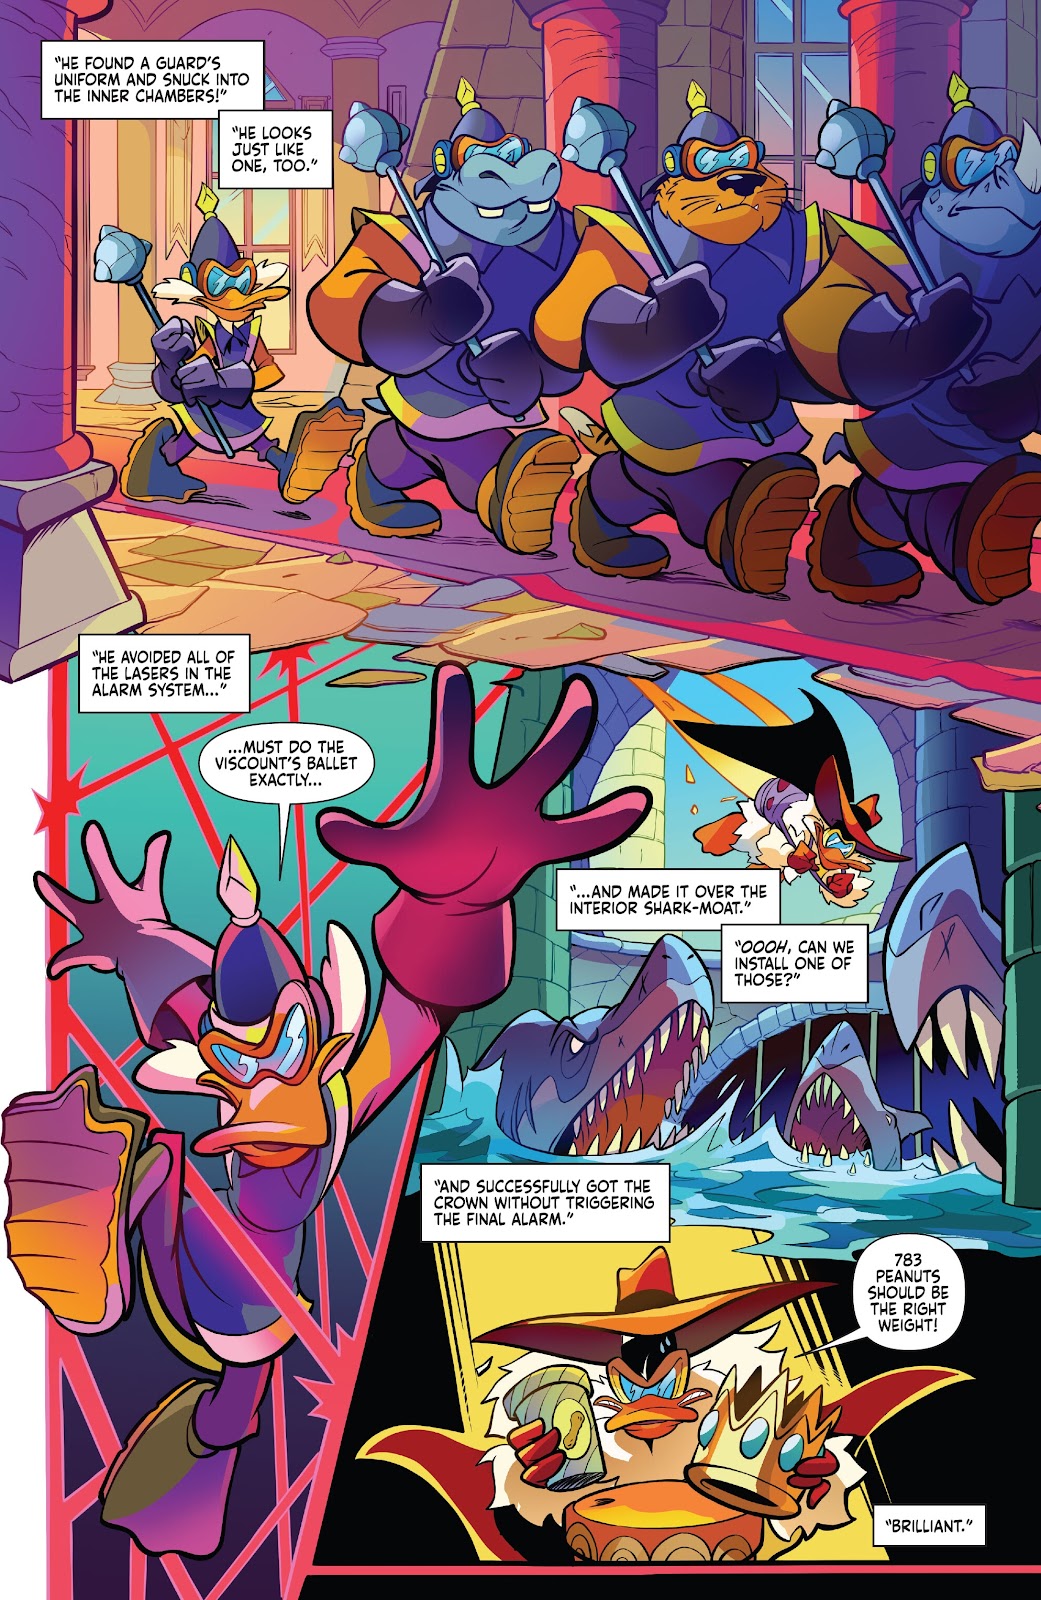 Darkwing Duck: Negaduck issue 5 - Page 14